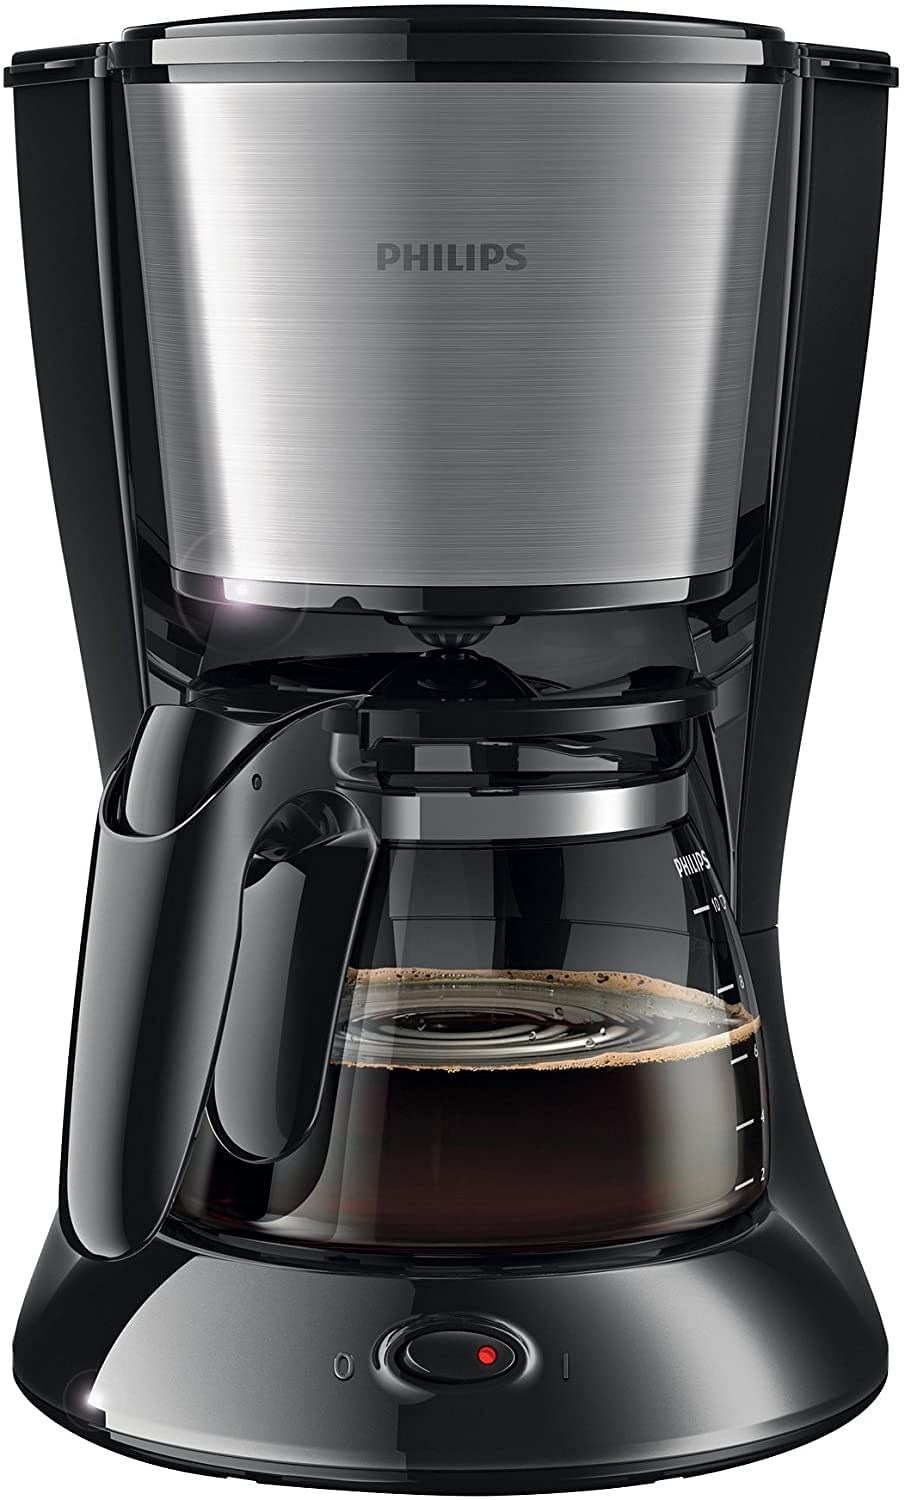 ماكينة تحضير القهوة ديلي كوليكشن من فيليبس HD7457/20 - اسود، 1000 وات